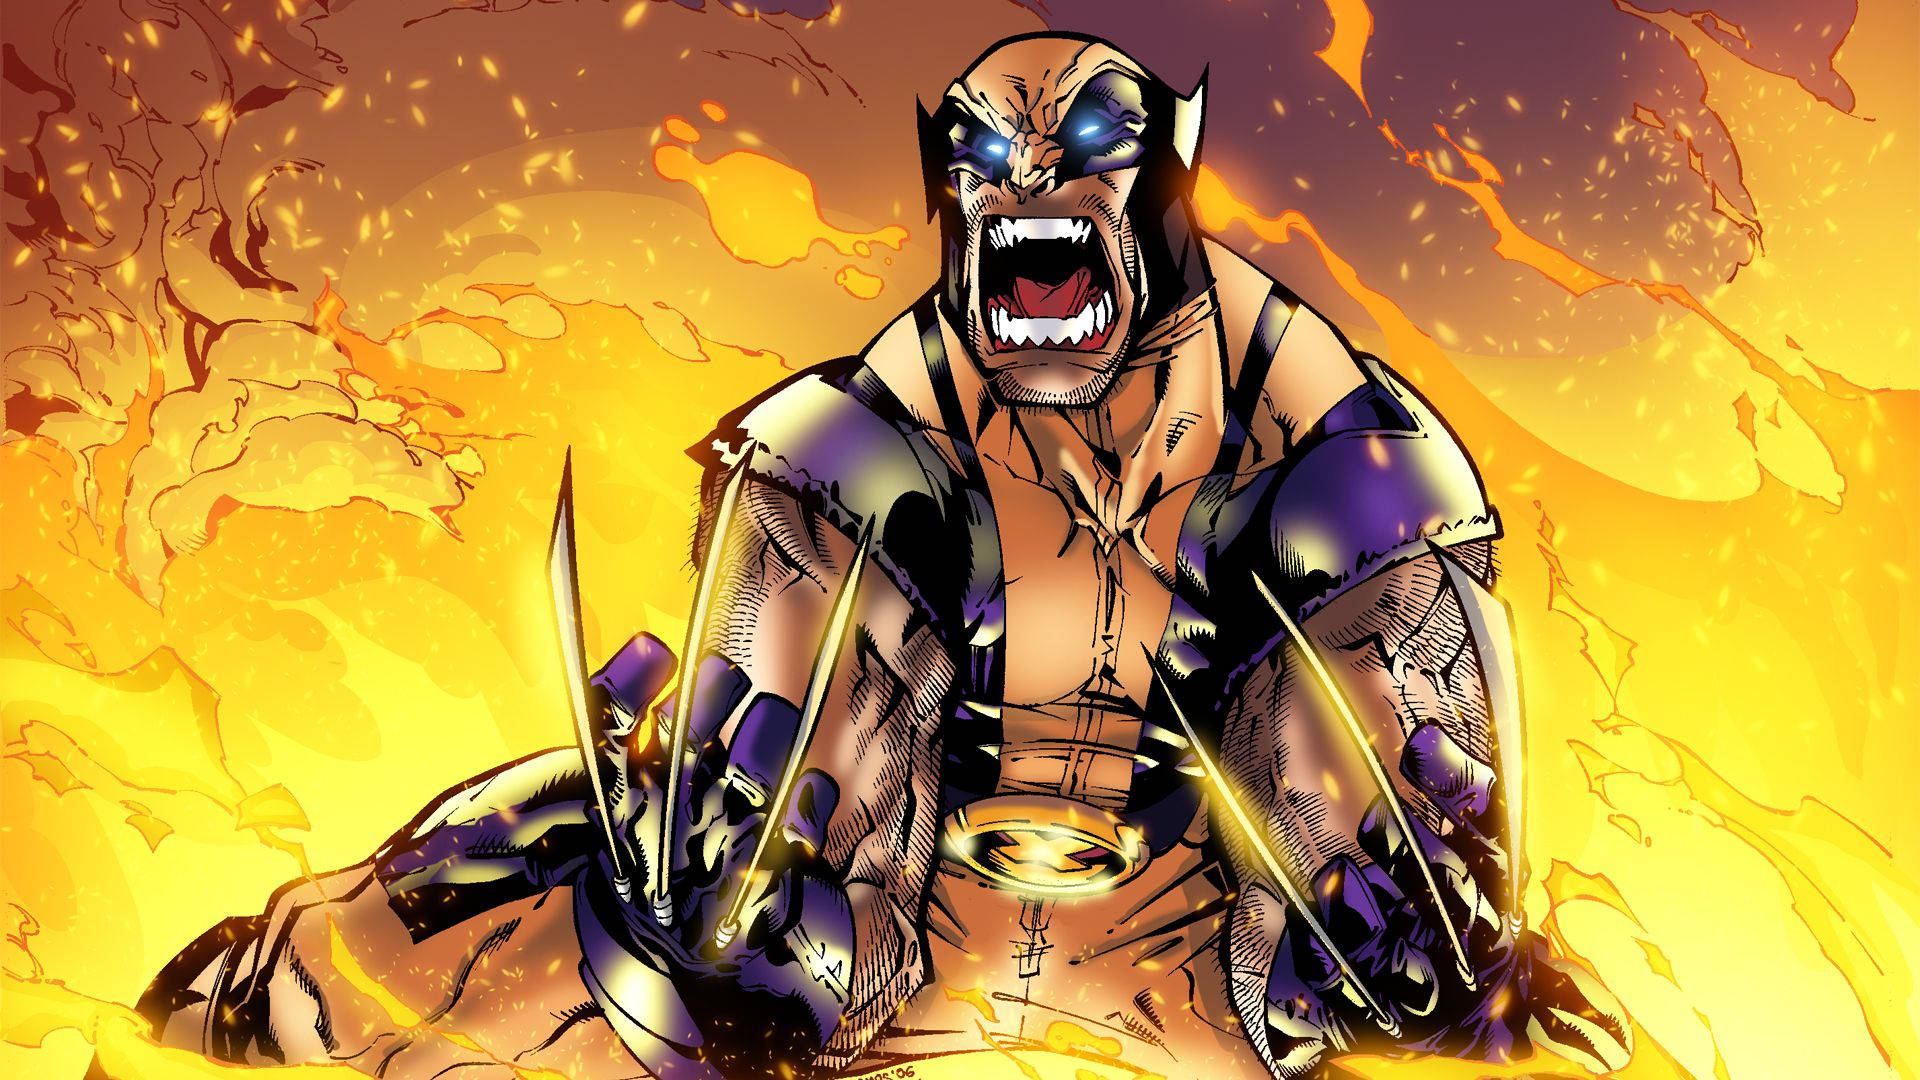 Berserk Wolverine In Flame Background